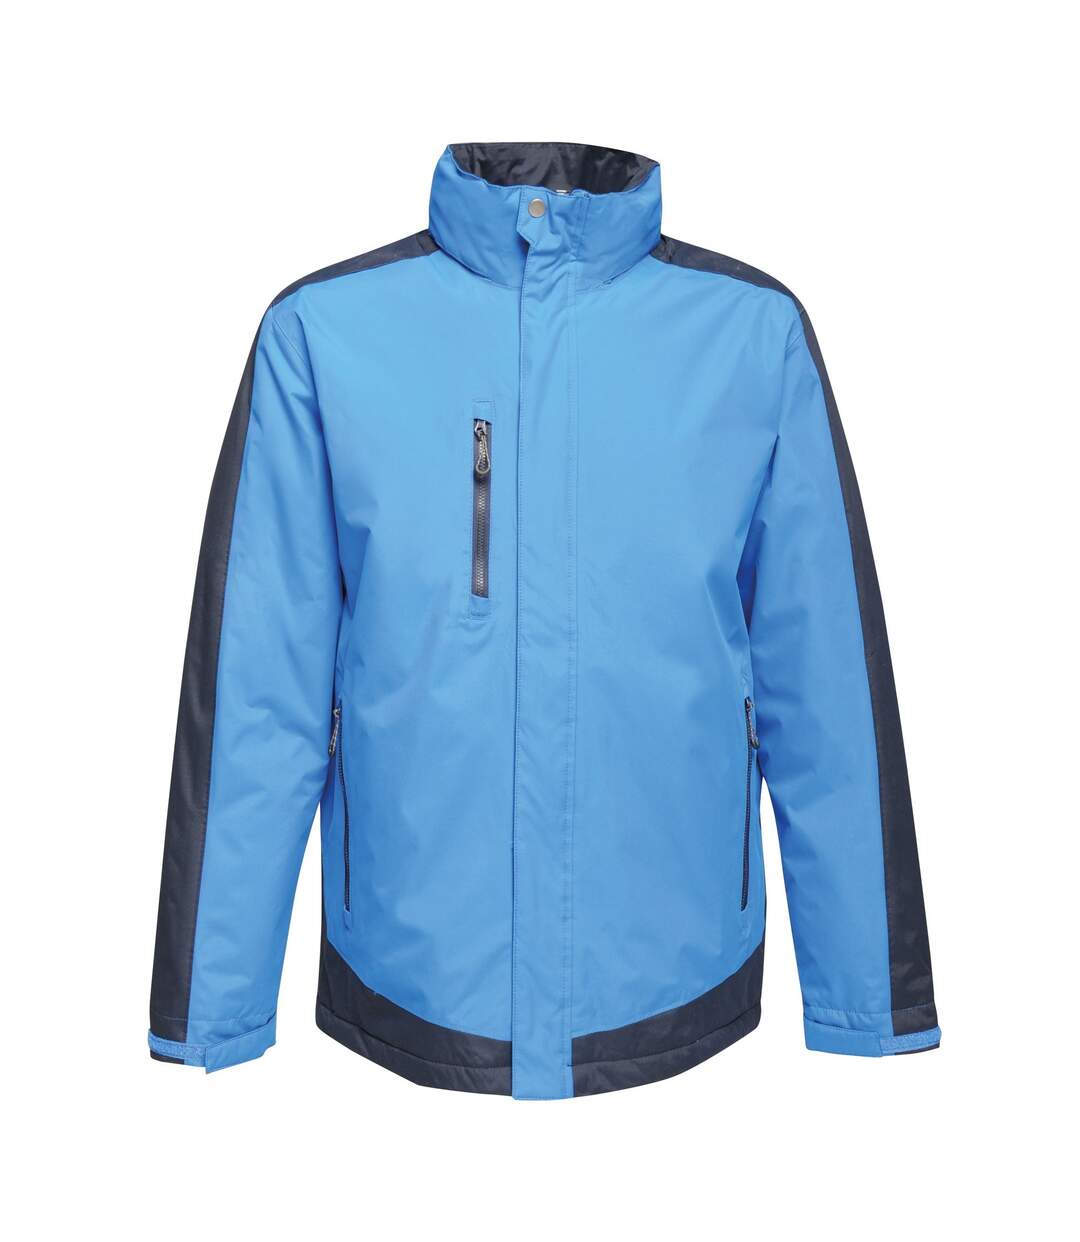 Regatta Mens Contrast Full Zip Jacket (Gentian Blue/Black Blue) - UTRG3743